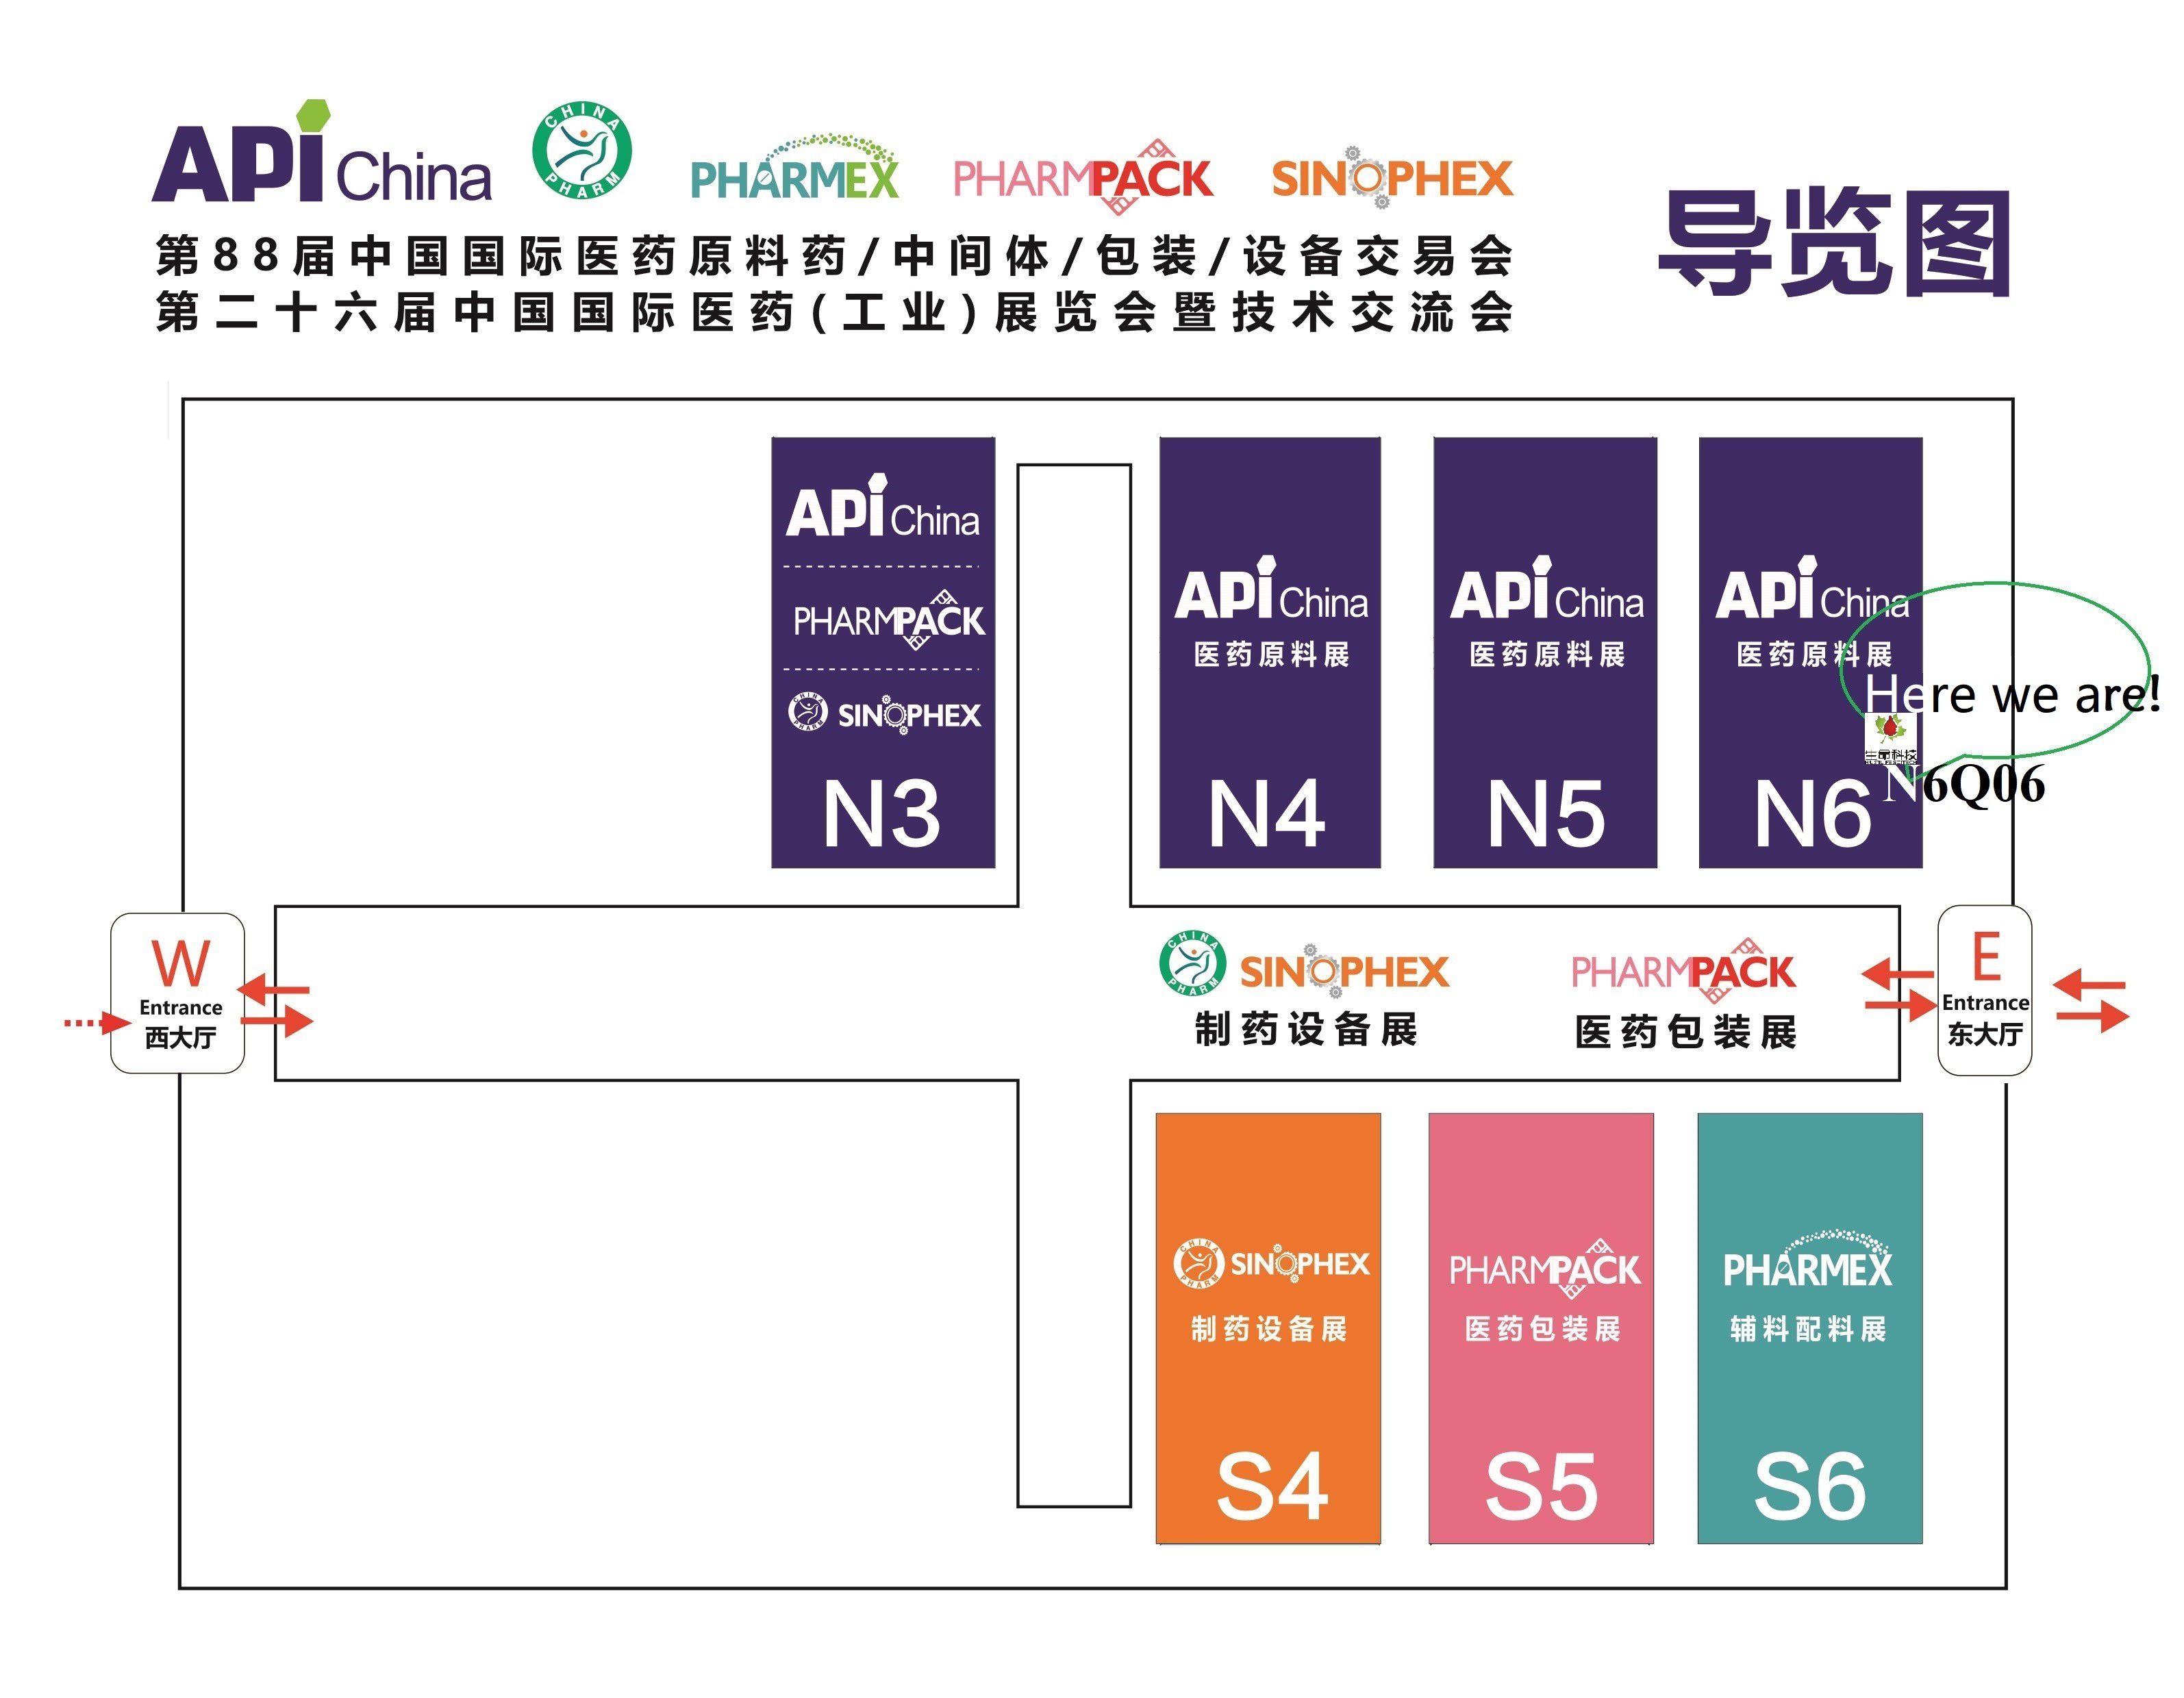 第88届中国国际医药原料药交易会(青岛) 展位号N6Q06